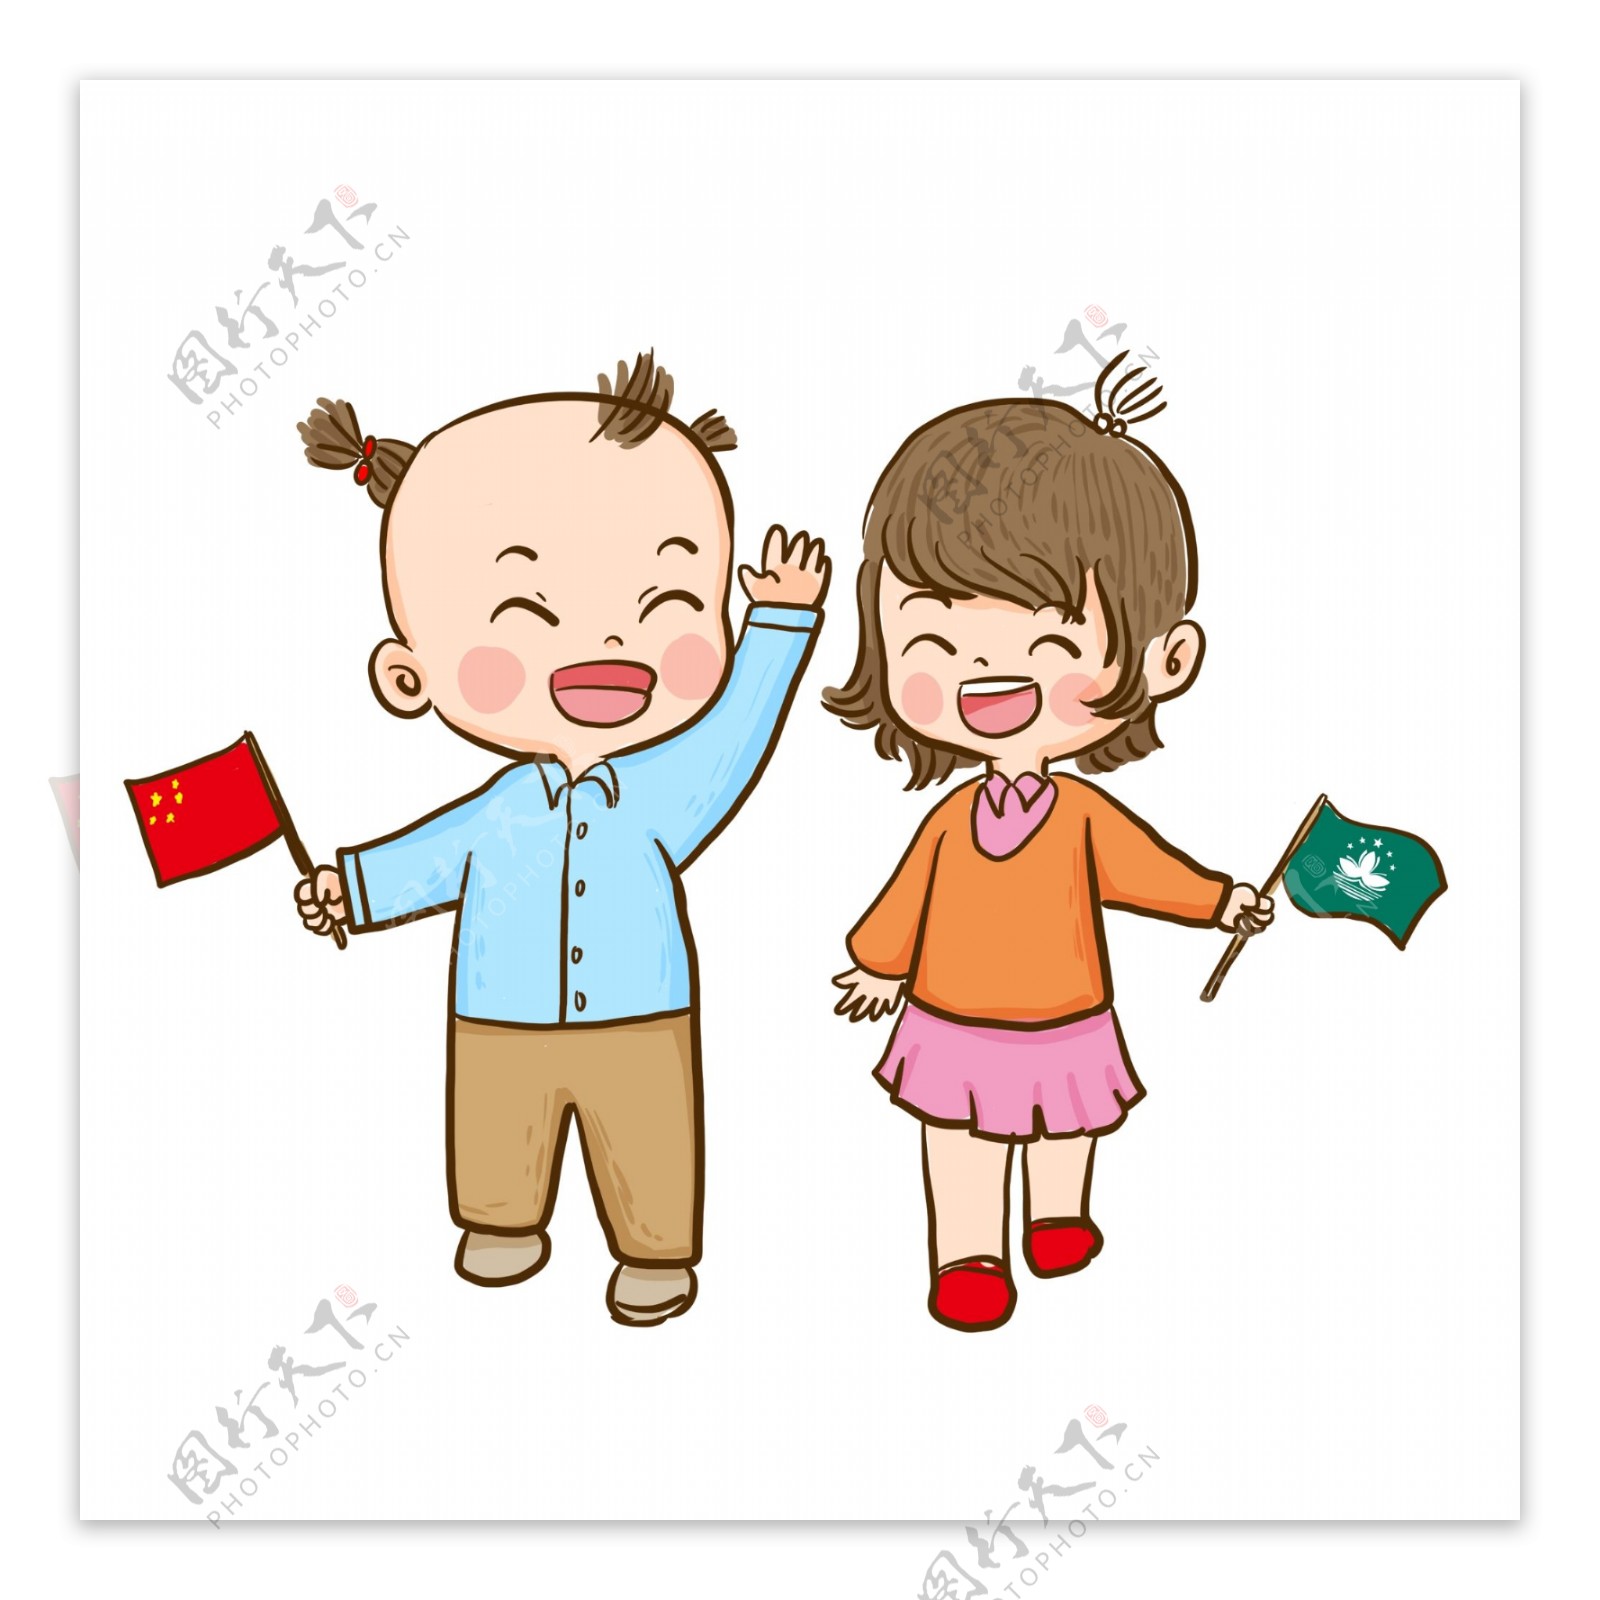 澳门回归19周年拿着中国澳门旗帜的小孩